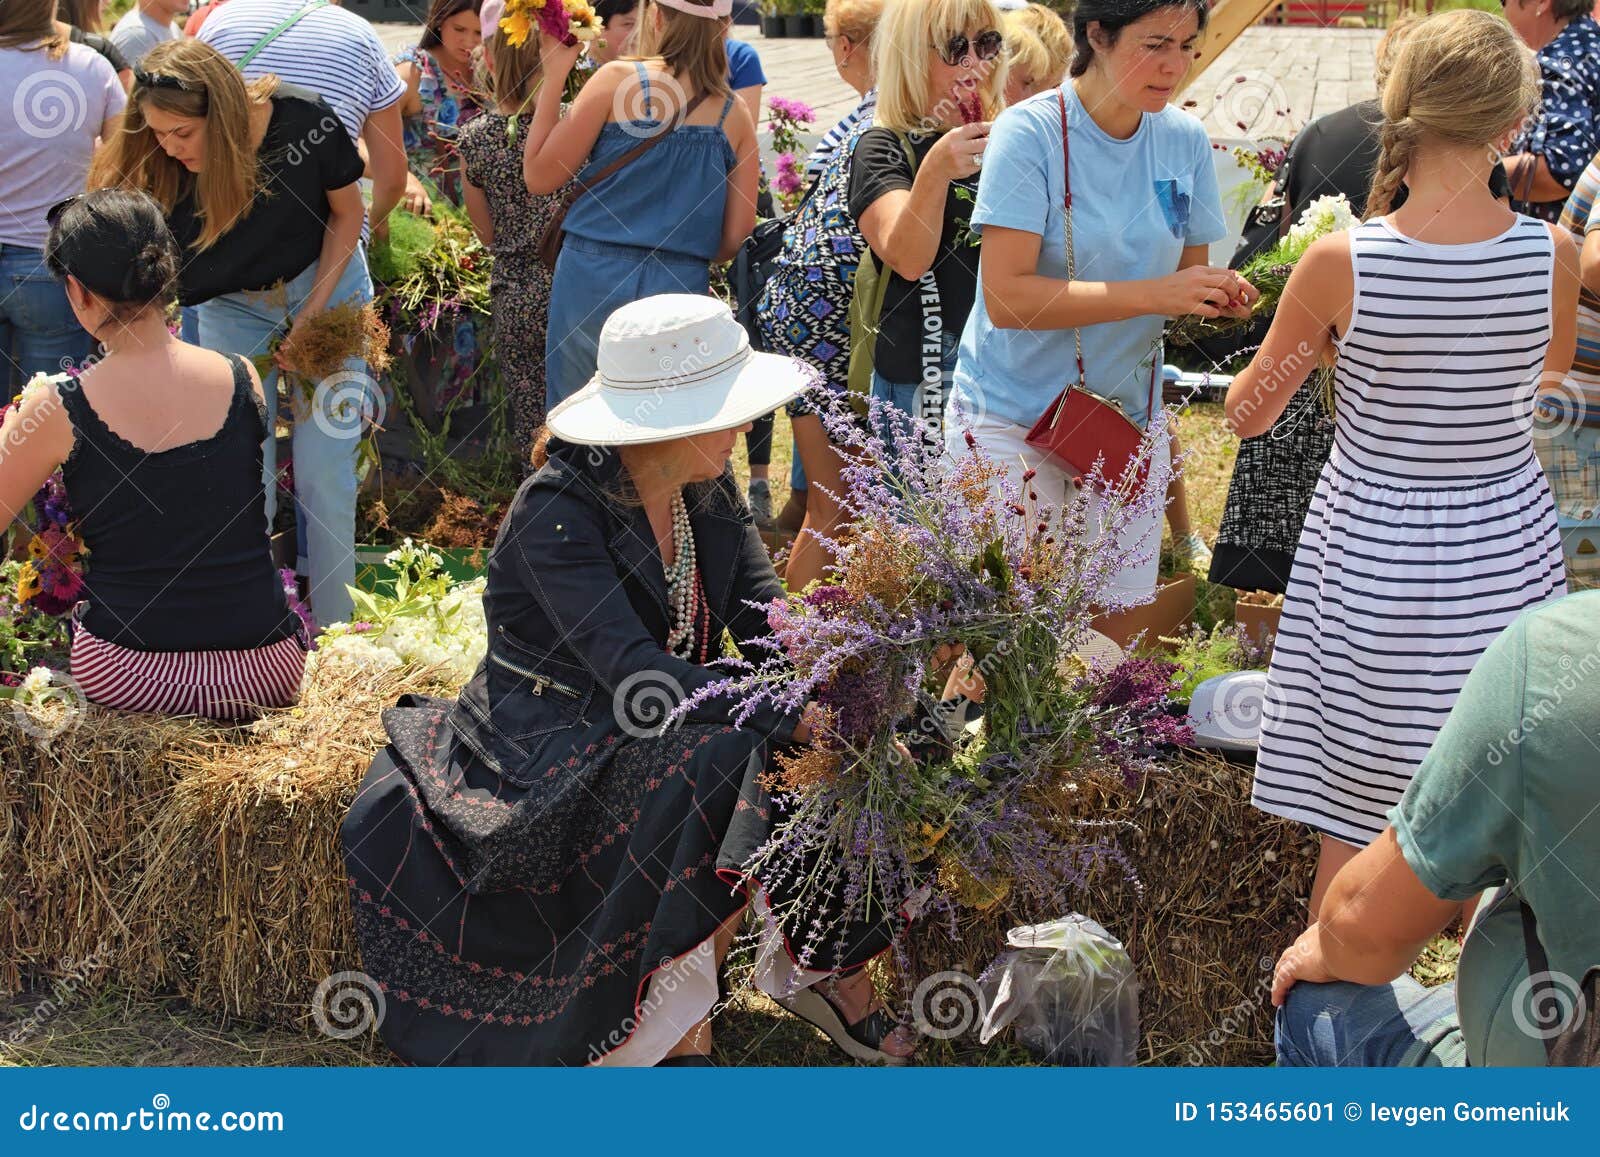 Kostivtsi, Ucraina 13 luglio 2019: La signora ha finito appena di fare la sua corona La gente sta tessendo le corone dai fiori selvaggi Concetto di estate Tradizione ucraina meravigliosa Berry Festival Brusviana